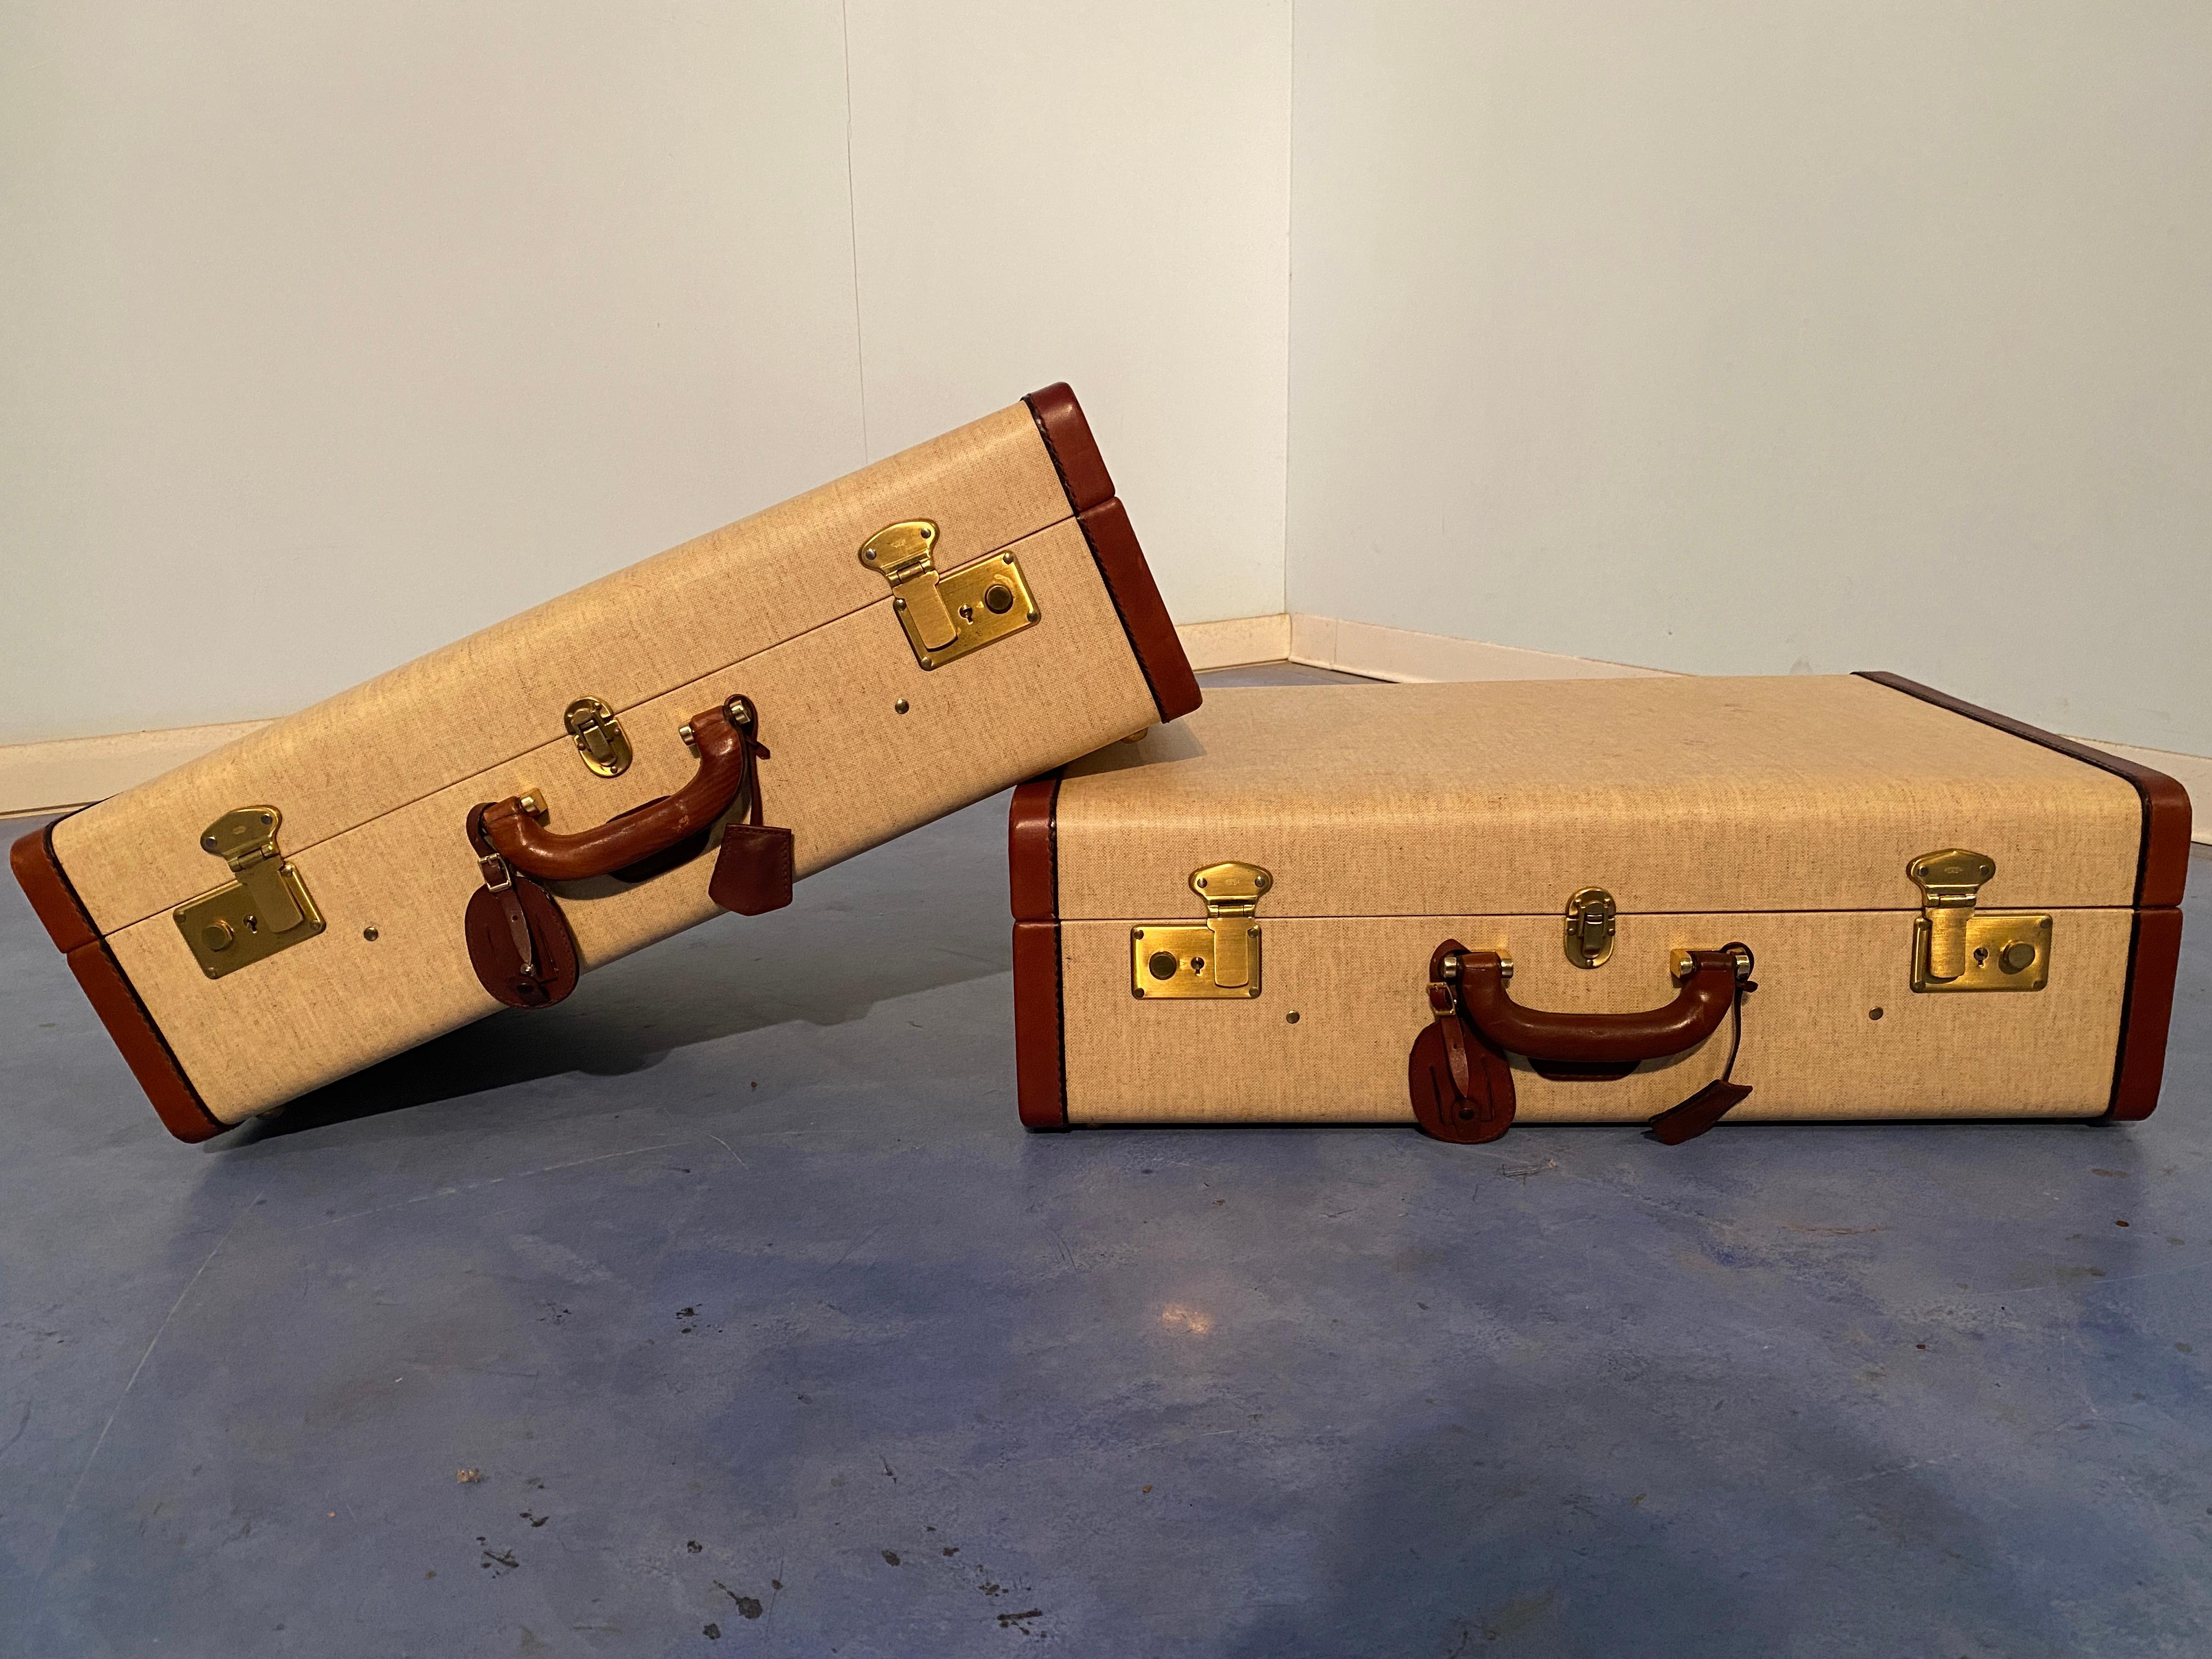 Set aus zwei italienischen Koffern aus den 1960er Jahren, sehr wertvoll als Sammlerstück oder für Möbel, und auch heute noch funktionstüchtig. Beide Koffer sind in gutem Zustand. Die Schlösser sind original und funktionieren mit ihren echten